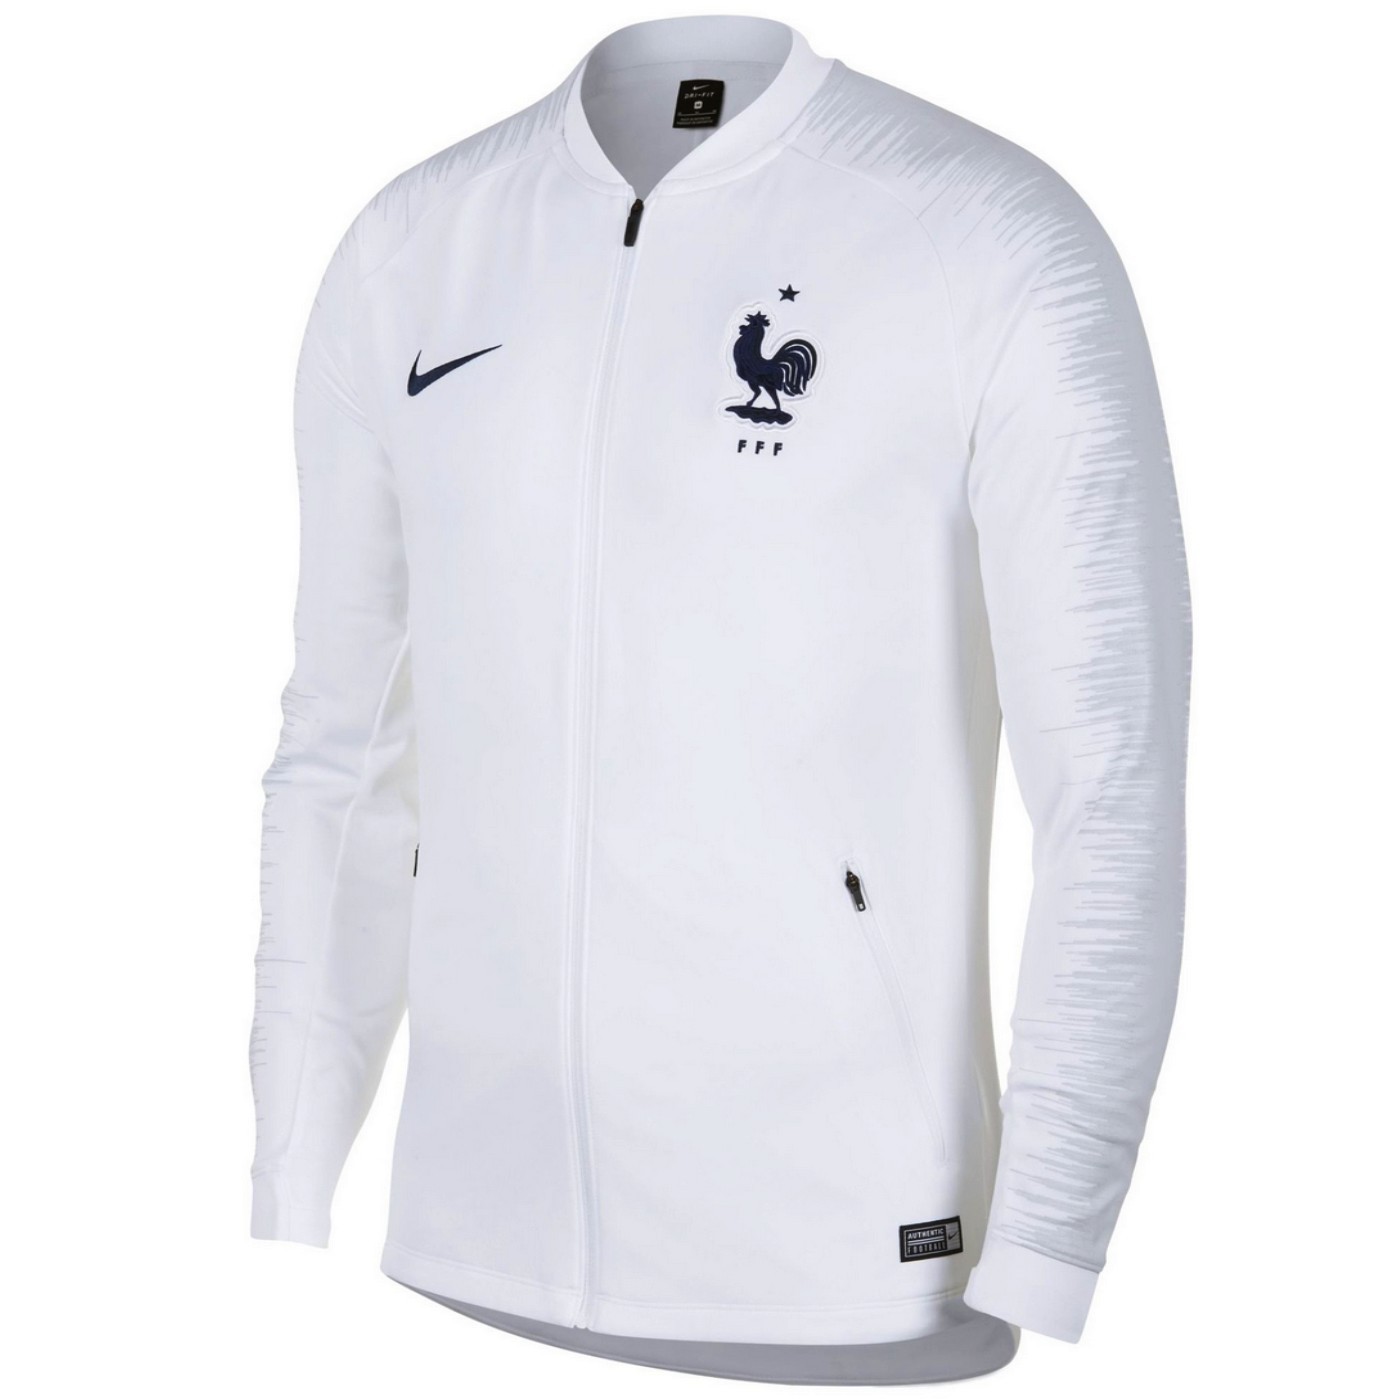 Tumor maligno Racionalización escalada France football white pre-match presentation jacket 2018/19 - Nike